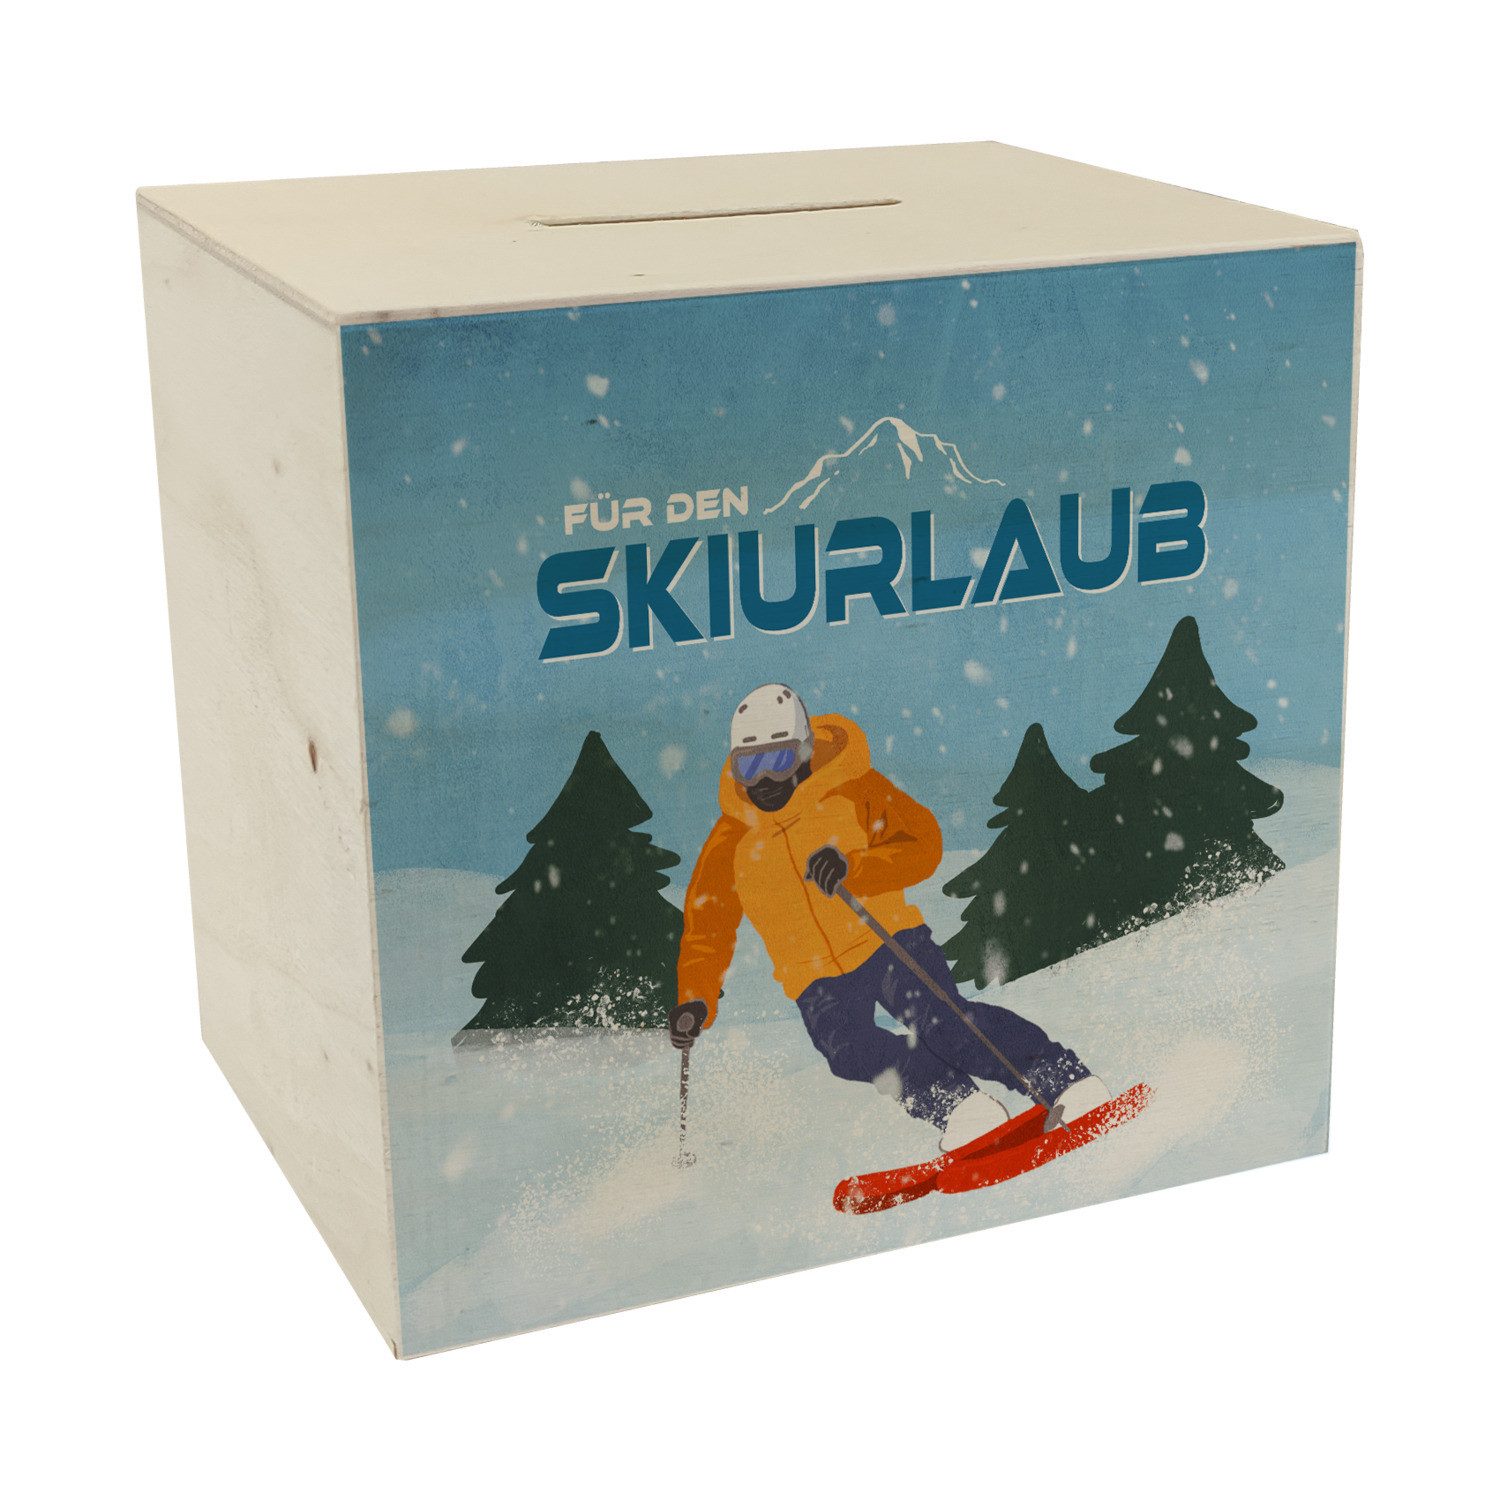 speecheese Spardose Für den Skiurlaub Spardose aus Holz mit coolem Skifahrer